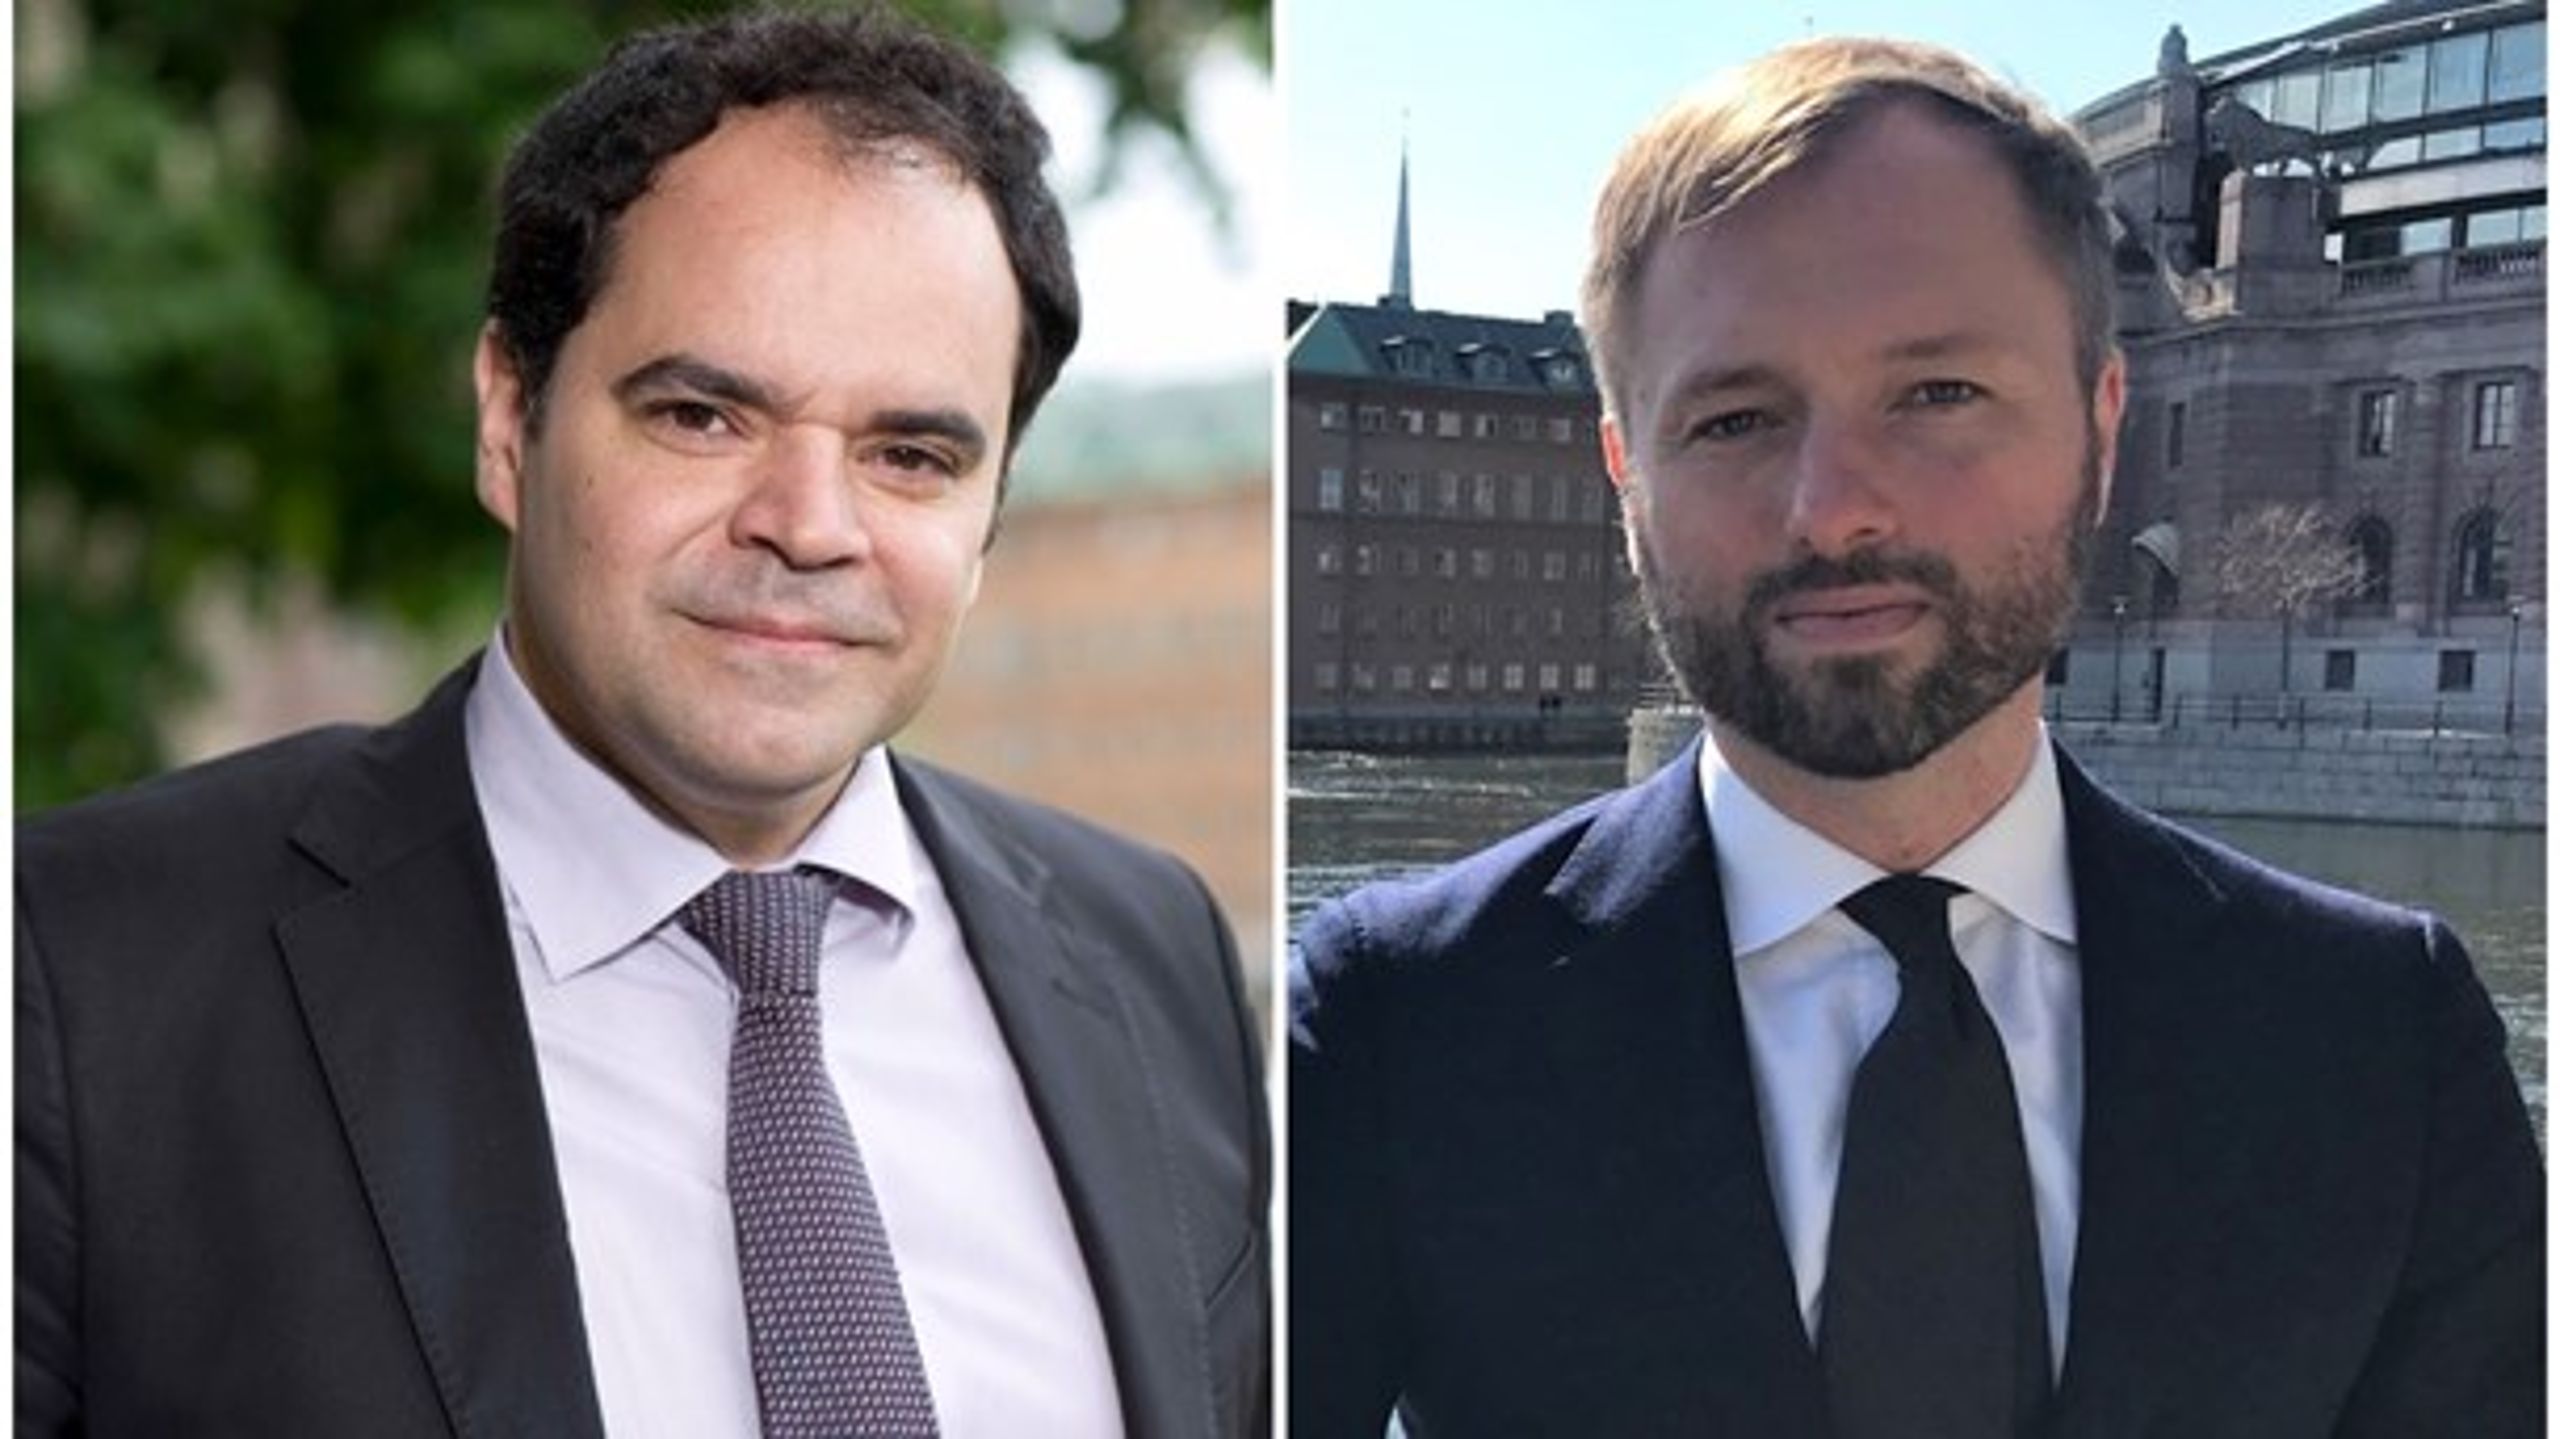 Paulo Silva och Mattias Keresztesi menar att höstens budget behöver ha fokus på att rusta Sverige bättre för den inbromsning av ekonomin som verkar vara på väg.